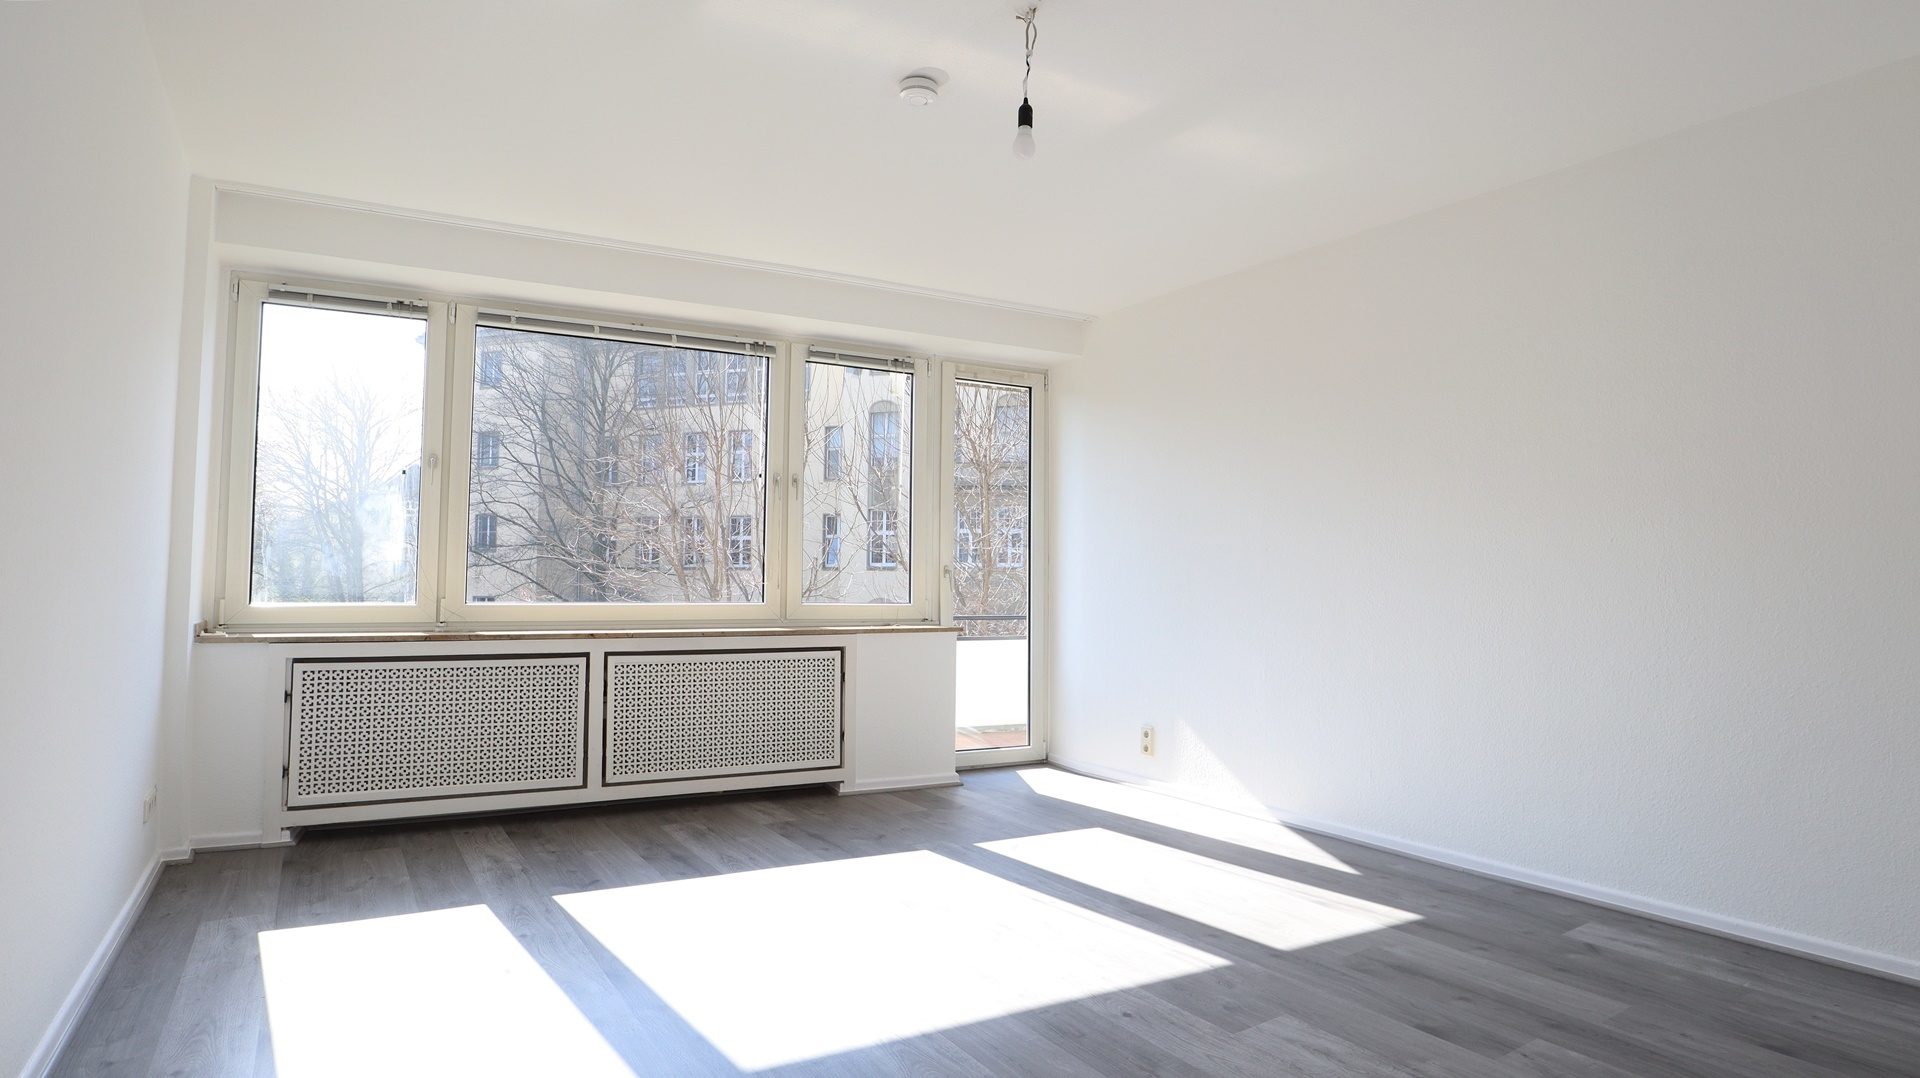 Böcker Wohnimmobilien - Immobilienangebot - Düsseldorf - Alle - Renovierte 3-Zimmer-Wohnung mit Sonnenbalkon in begehrter Wohnlage von Oberkassel